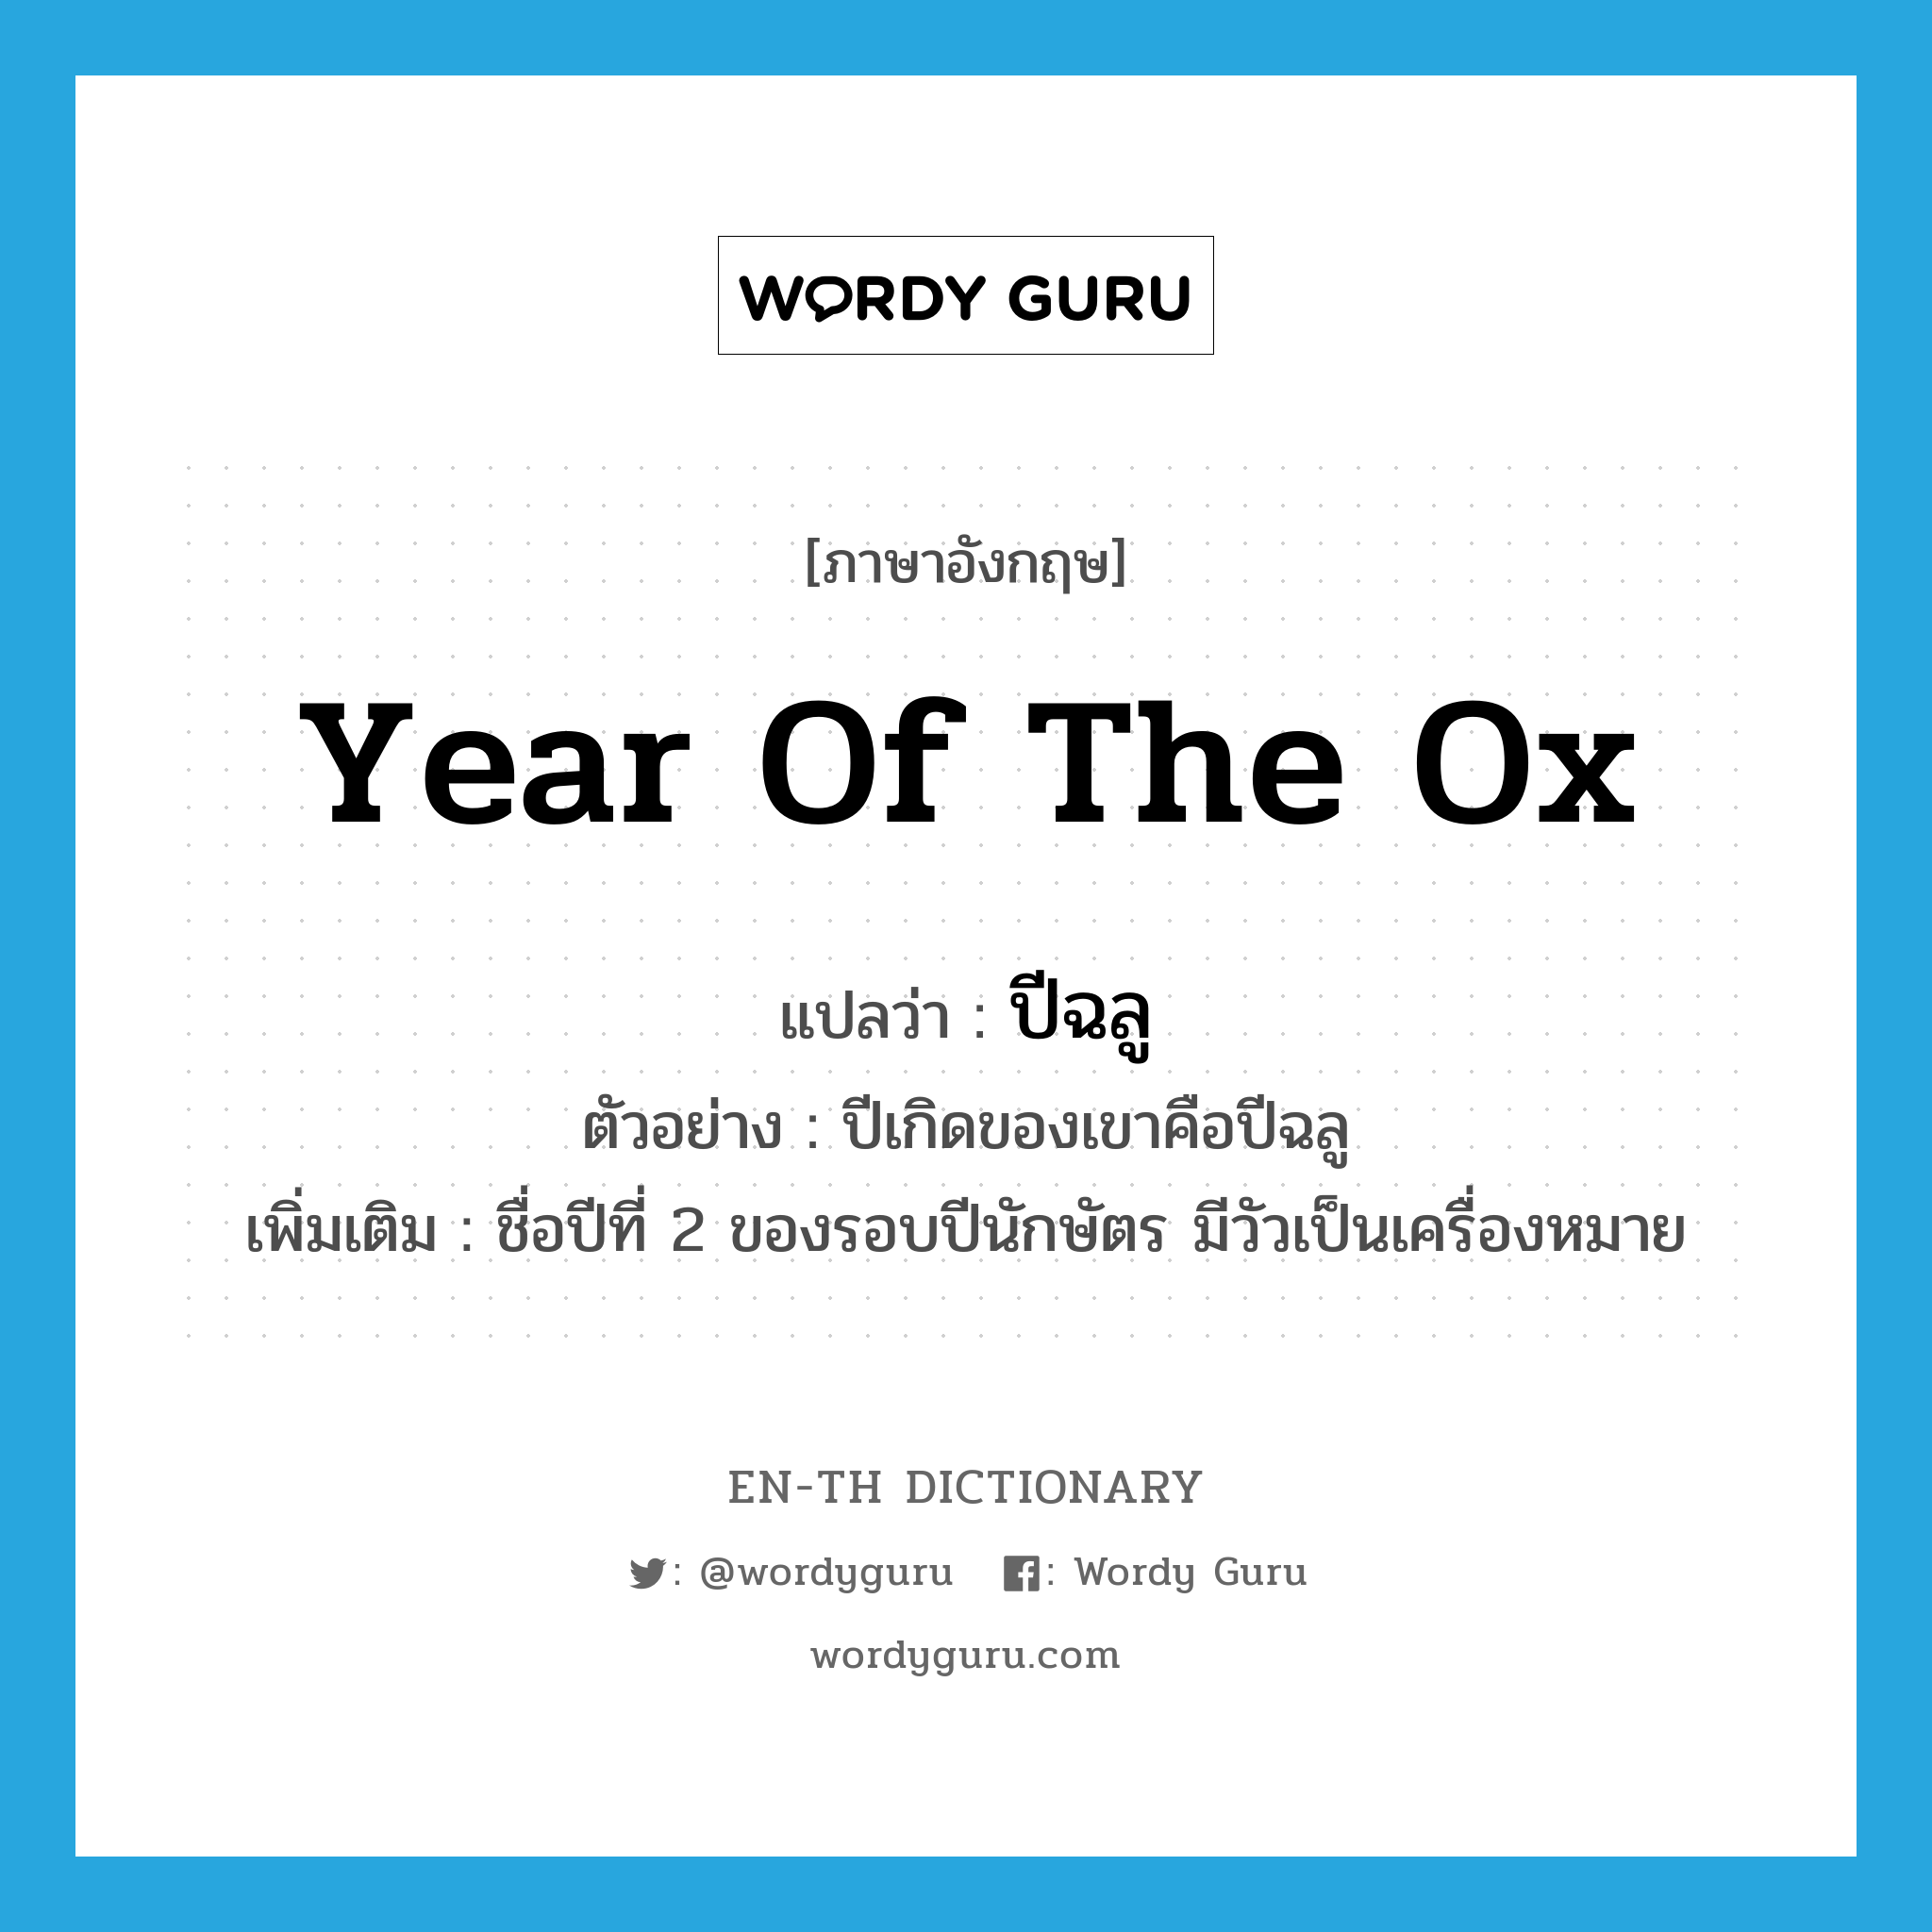 year of the ox แปลว่า?, คำศัพท์ภาษาอังกฤษ year of the ox แปลว่า ปีฉลู ประเภท N ตัวอย่าง ปีเกิดของเขาคือปีฉลู เพิ่มเติม ชื่อปีที่ 2 ของรอบปีนักษัตร มีวัวเป็นเครื่องหมาย หมวด N